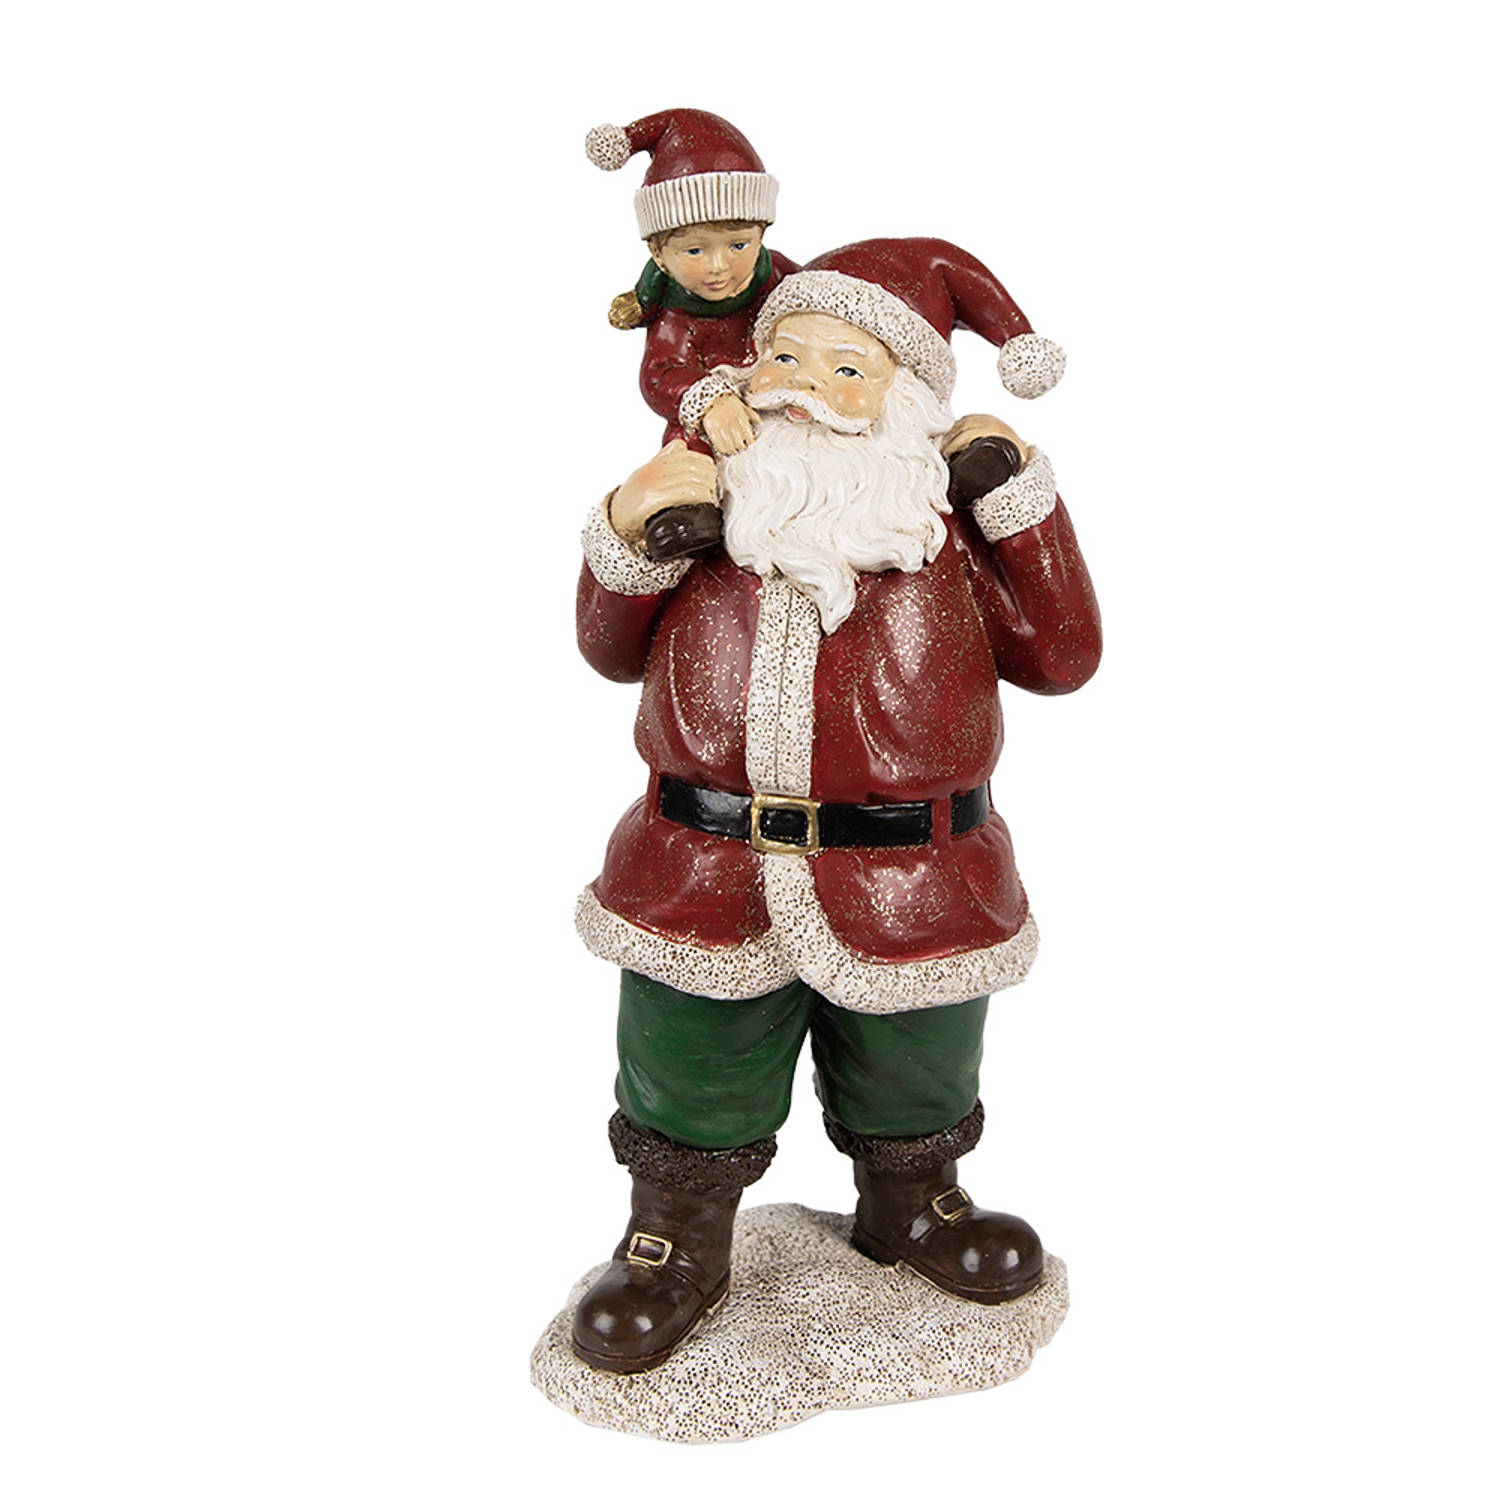 HAES DECO - Kerstman deco Figuur - Formaat 11x8x23 cm - Kleur Rood - Materiaal Polyresin - Kerst Figuur, Kerstdecoratie